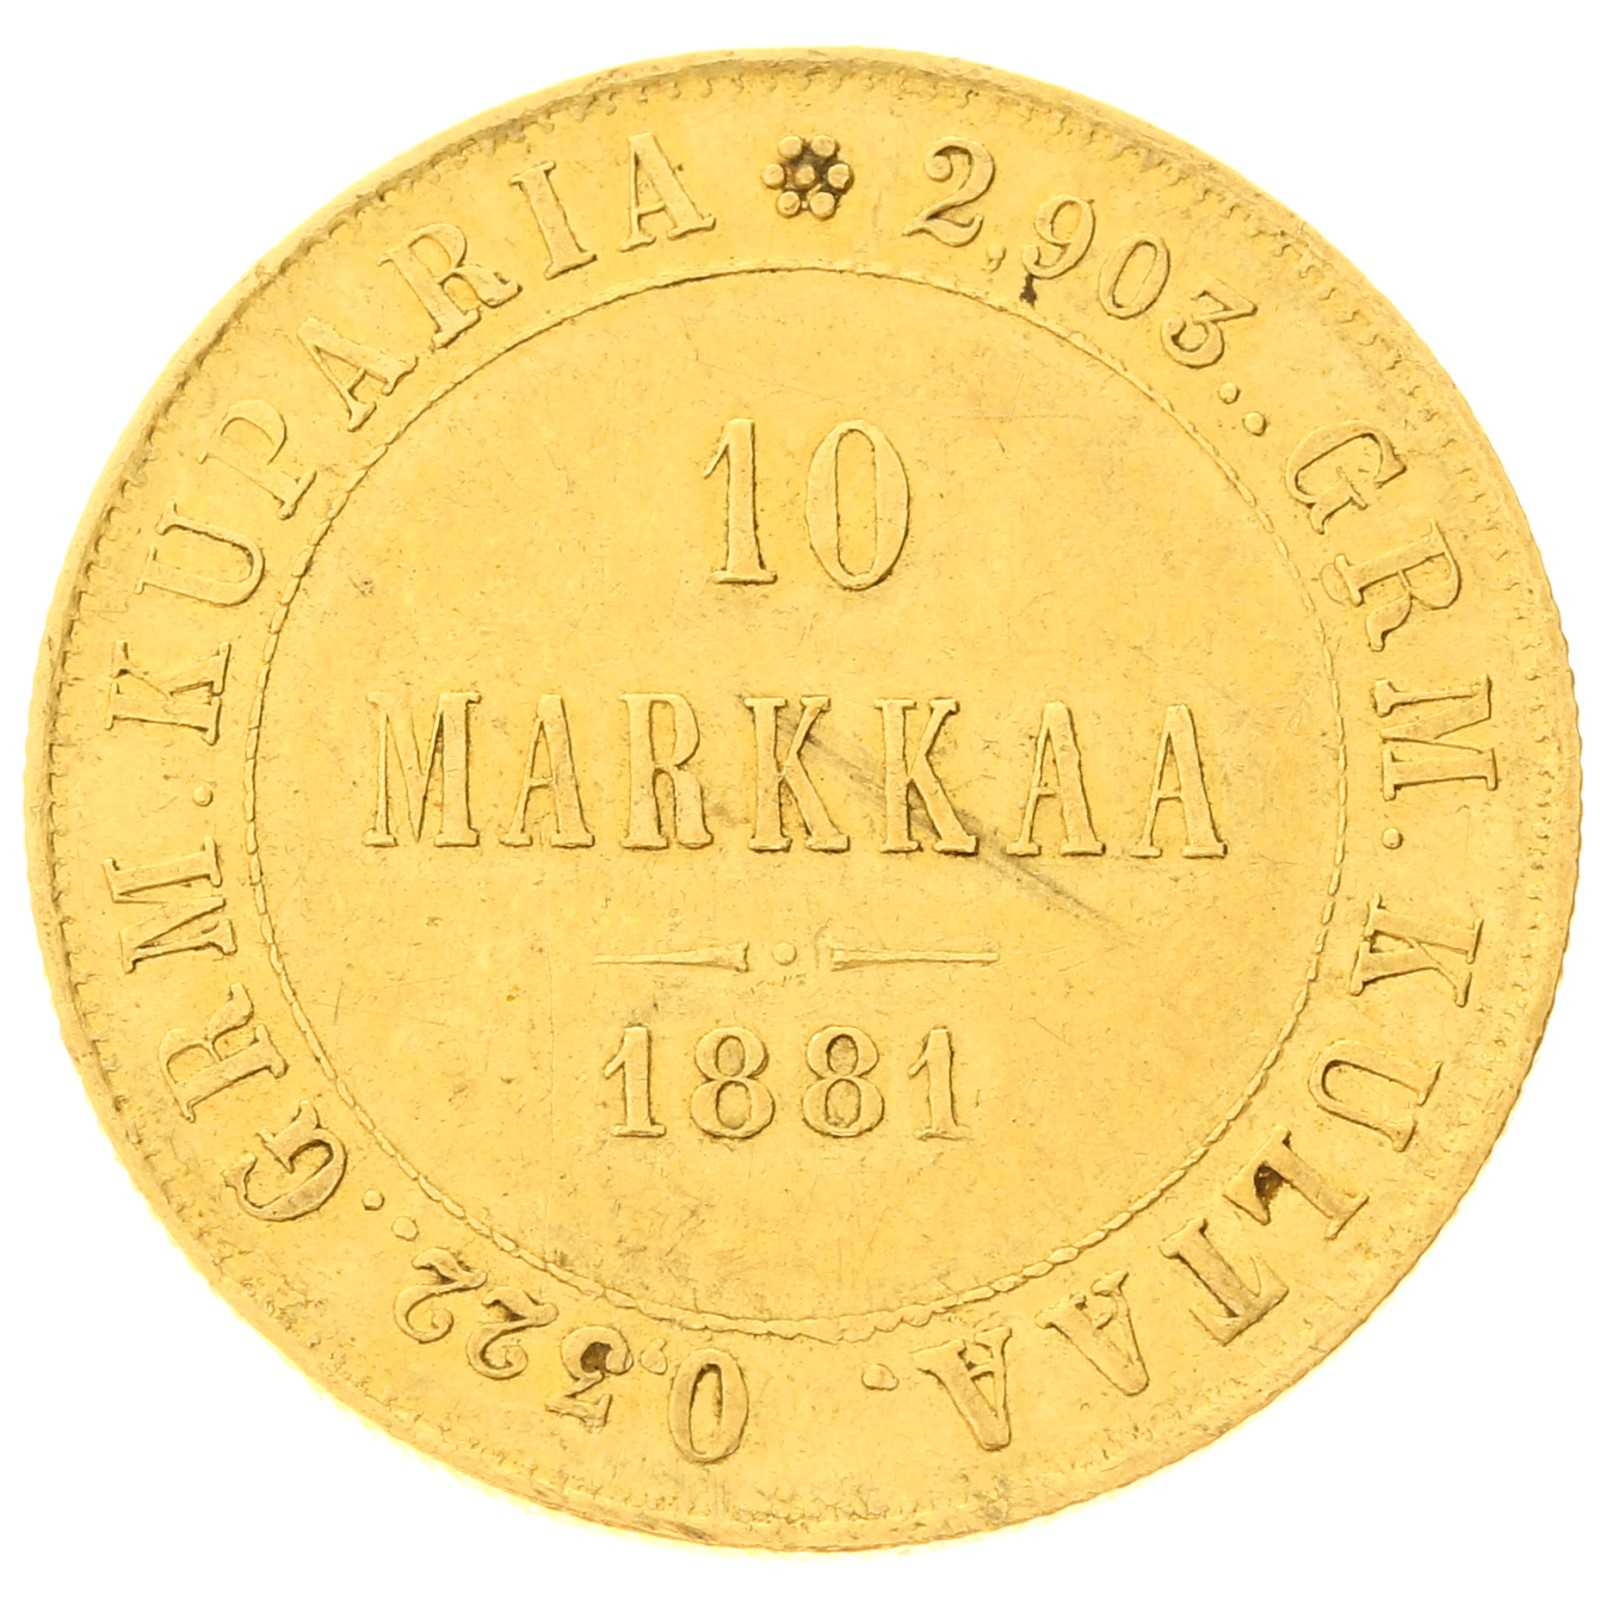 Finland - 10 markkaa - 1881 - Alexander III